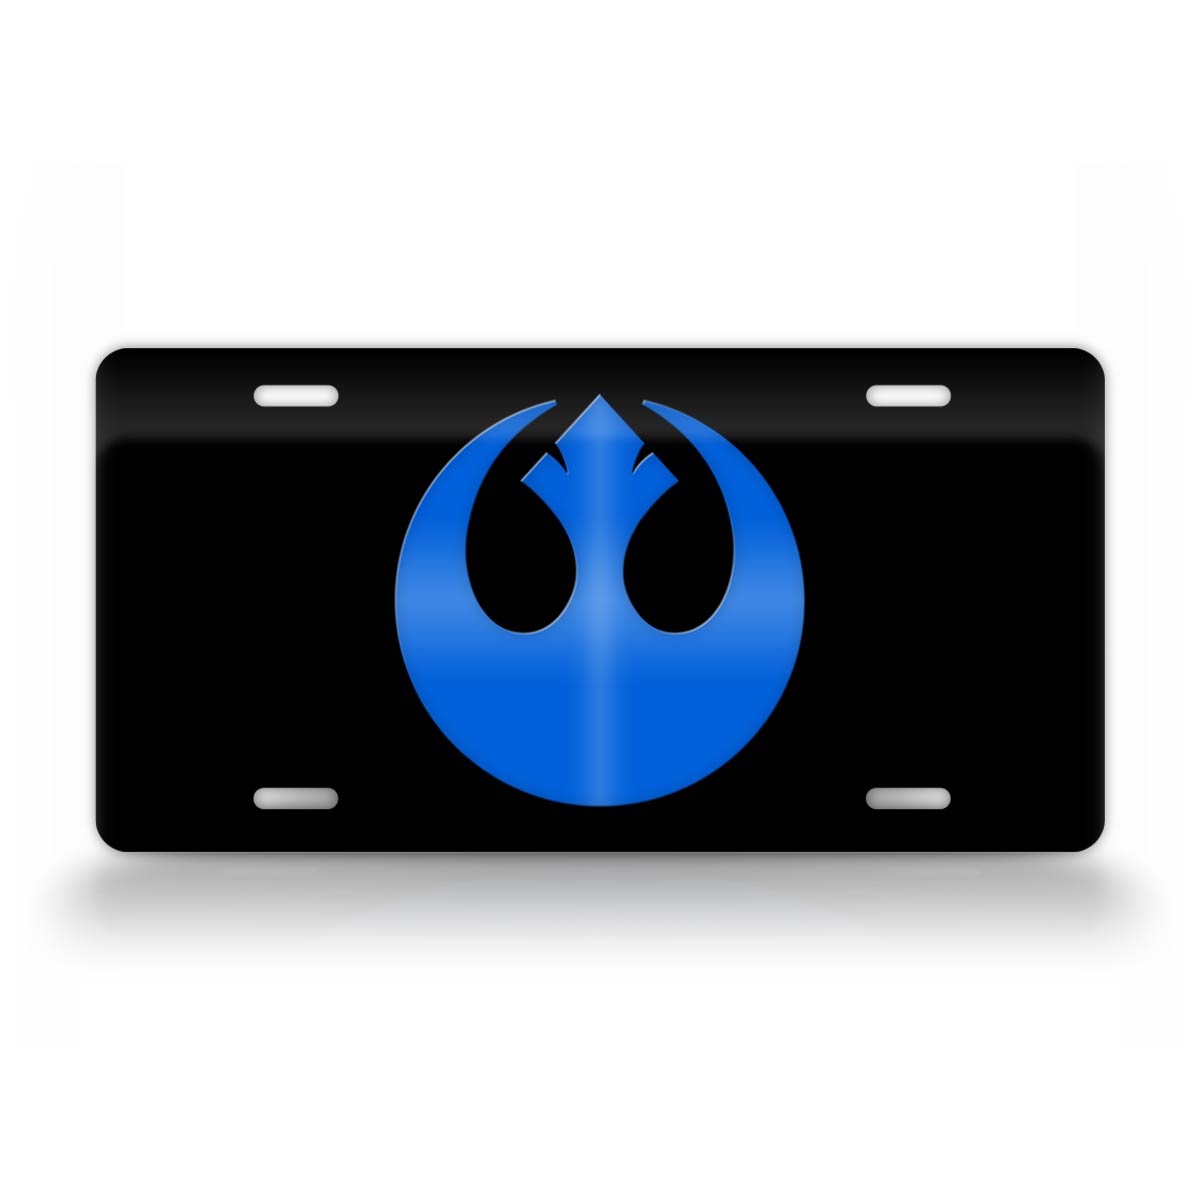 Blue Star Wars Rebel Alliance Emblem License Plate 